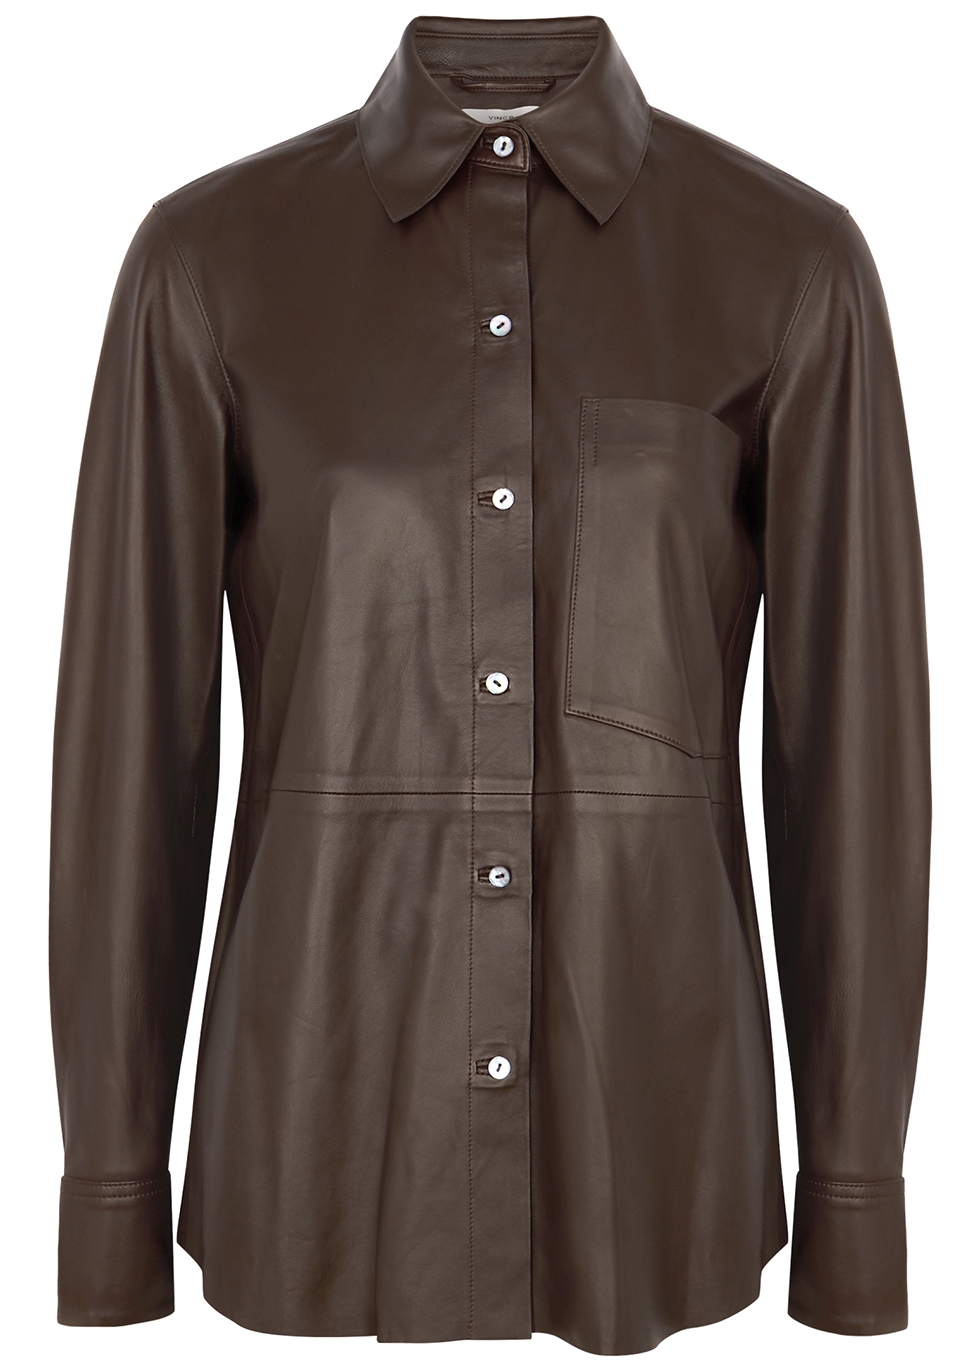 Dark brown leather shirt